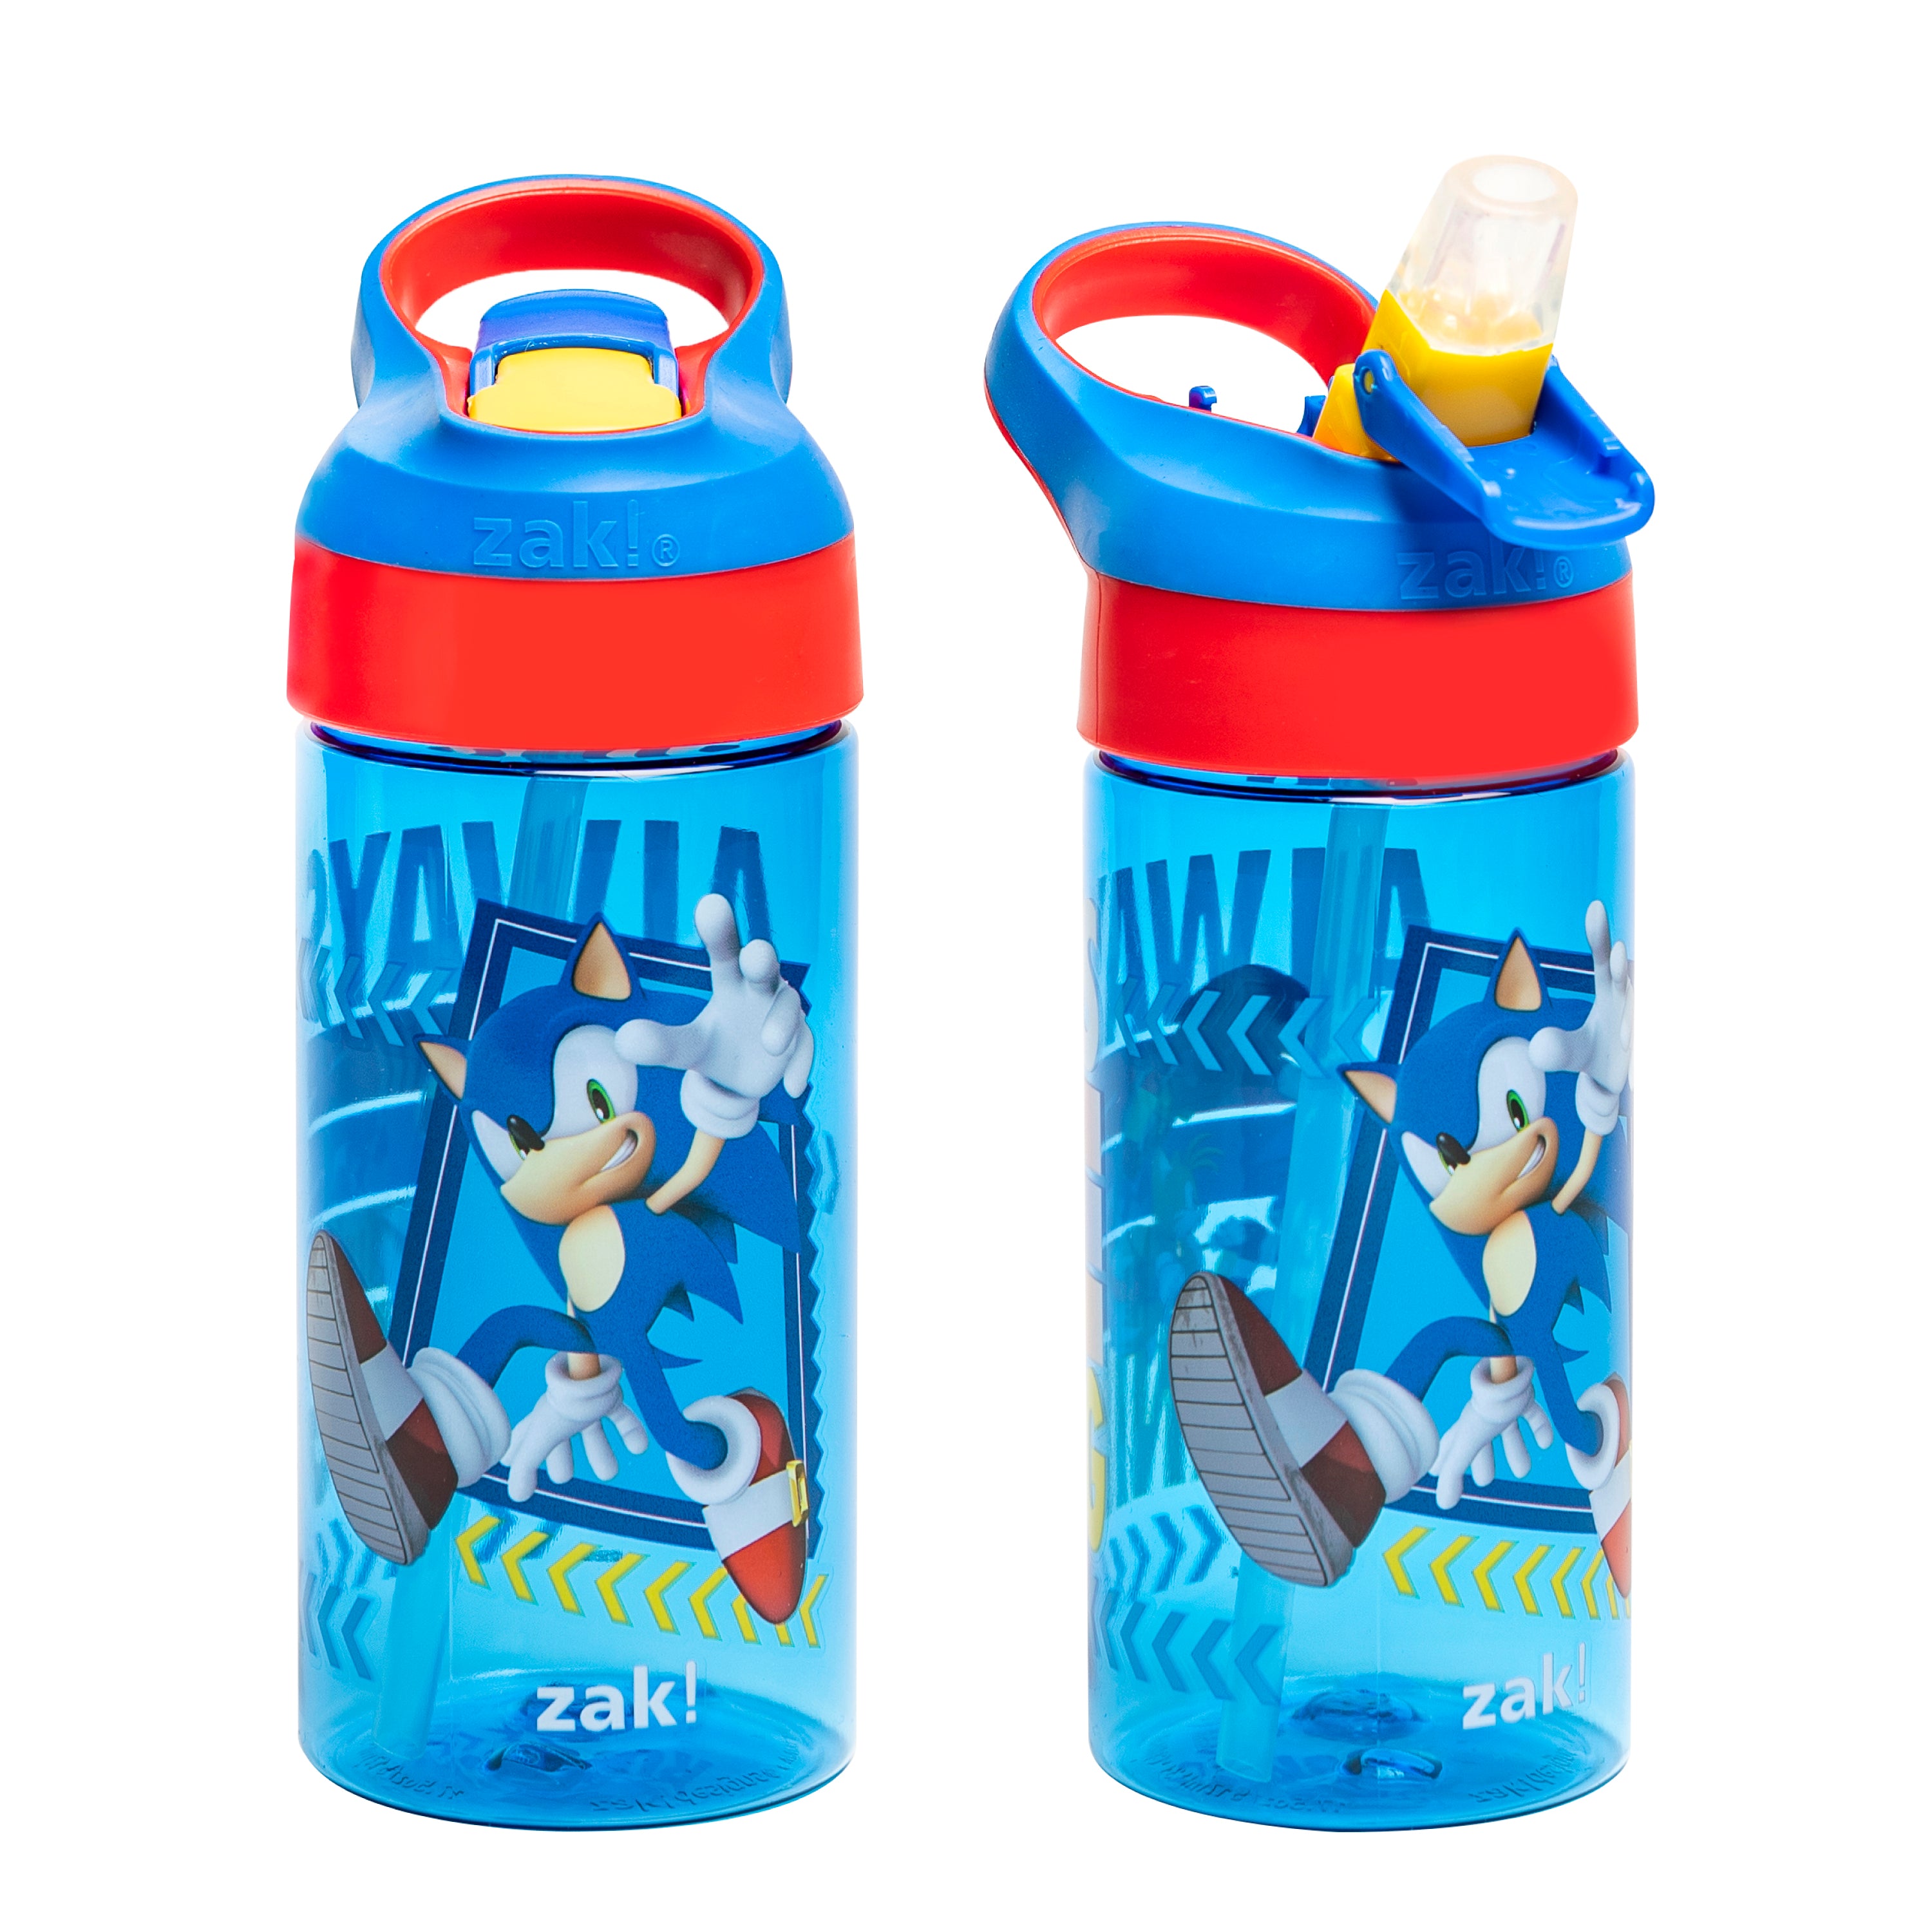 blippi water bottle｜TikTok Search